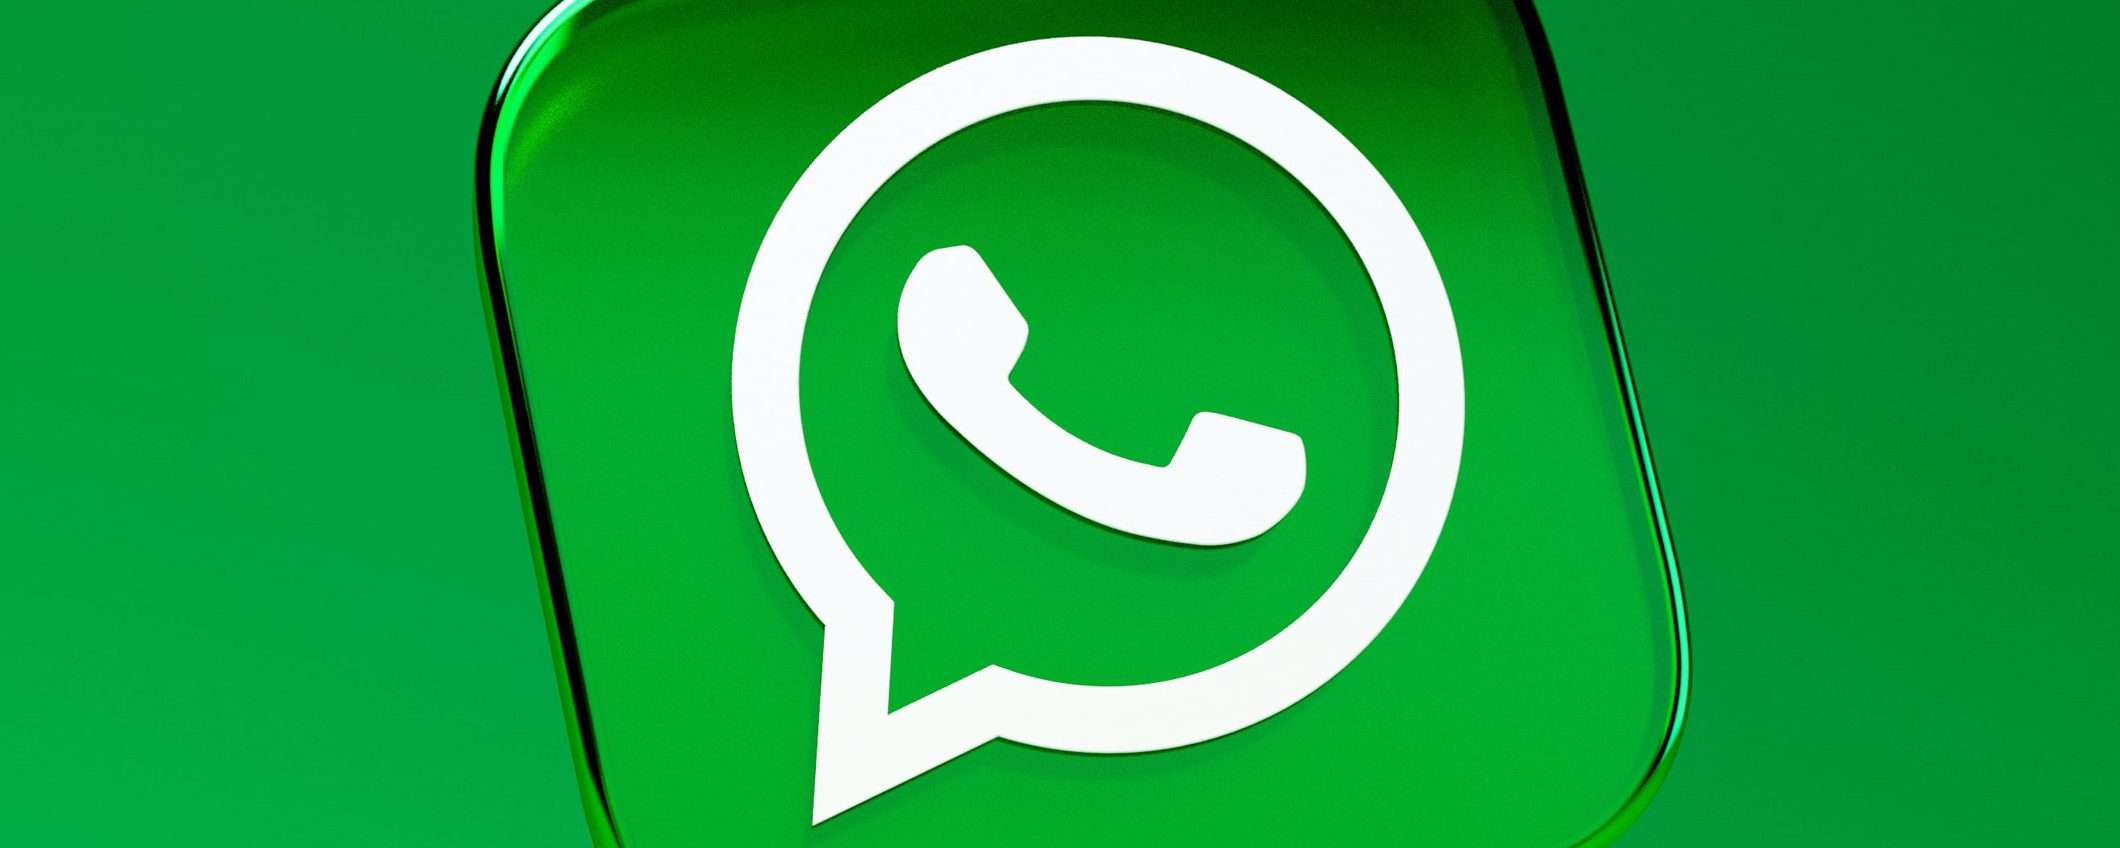 WhatsApp: trasferimento chat da Android a iPhone